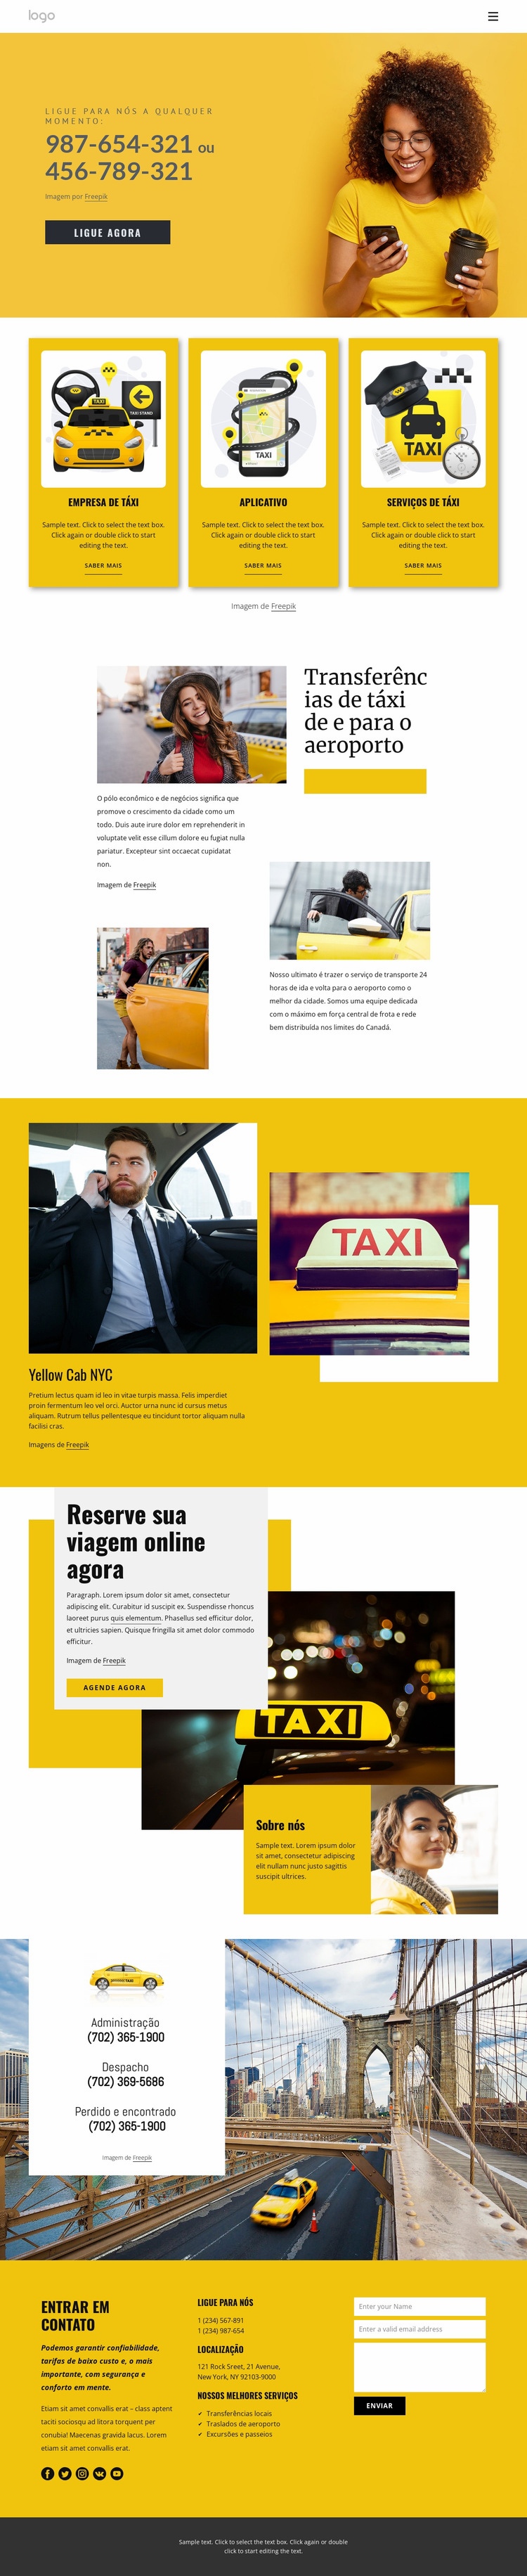 Serviço de táxi de qualidade Modelo de uma página